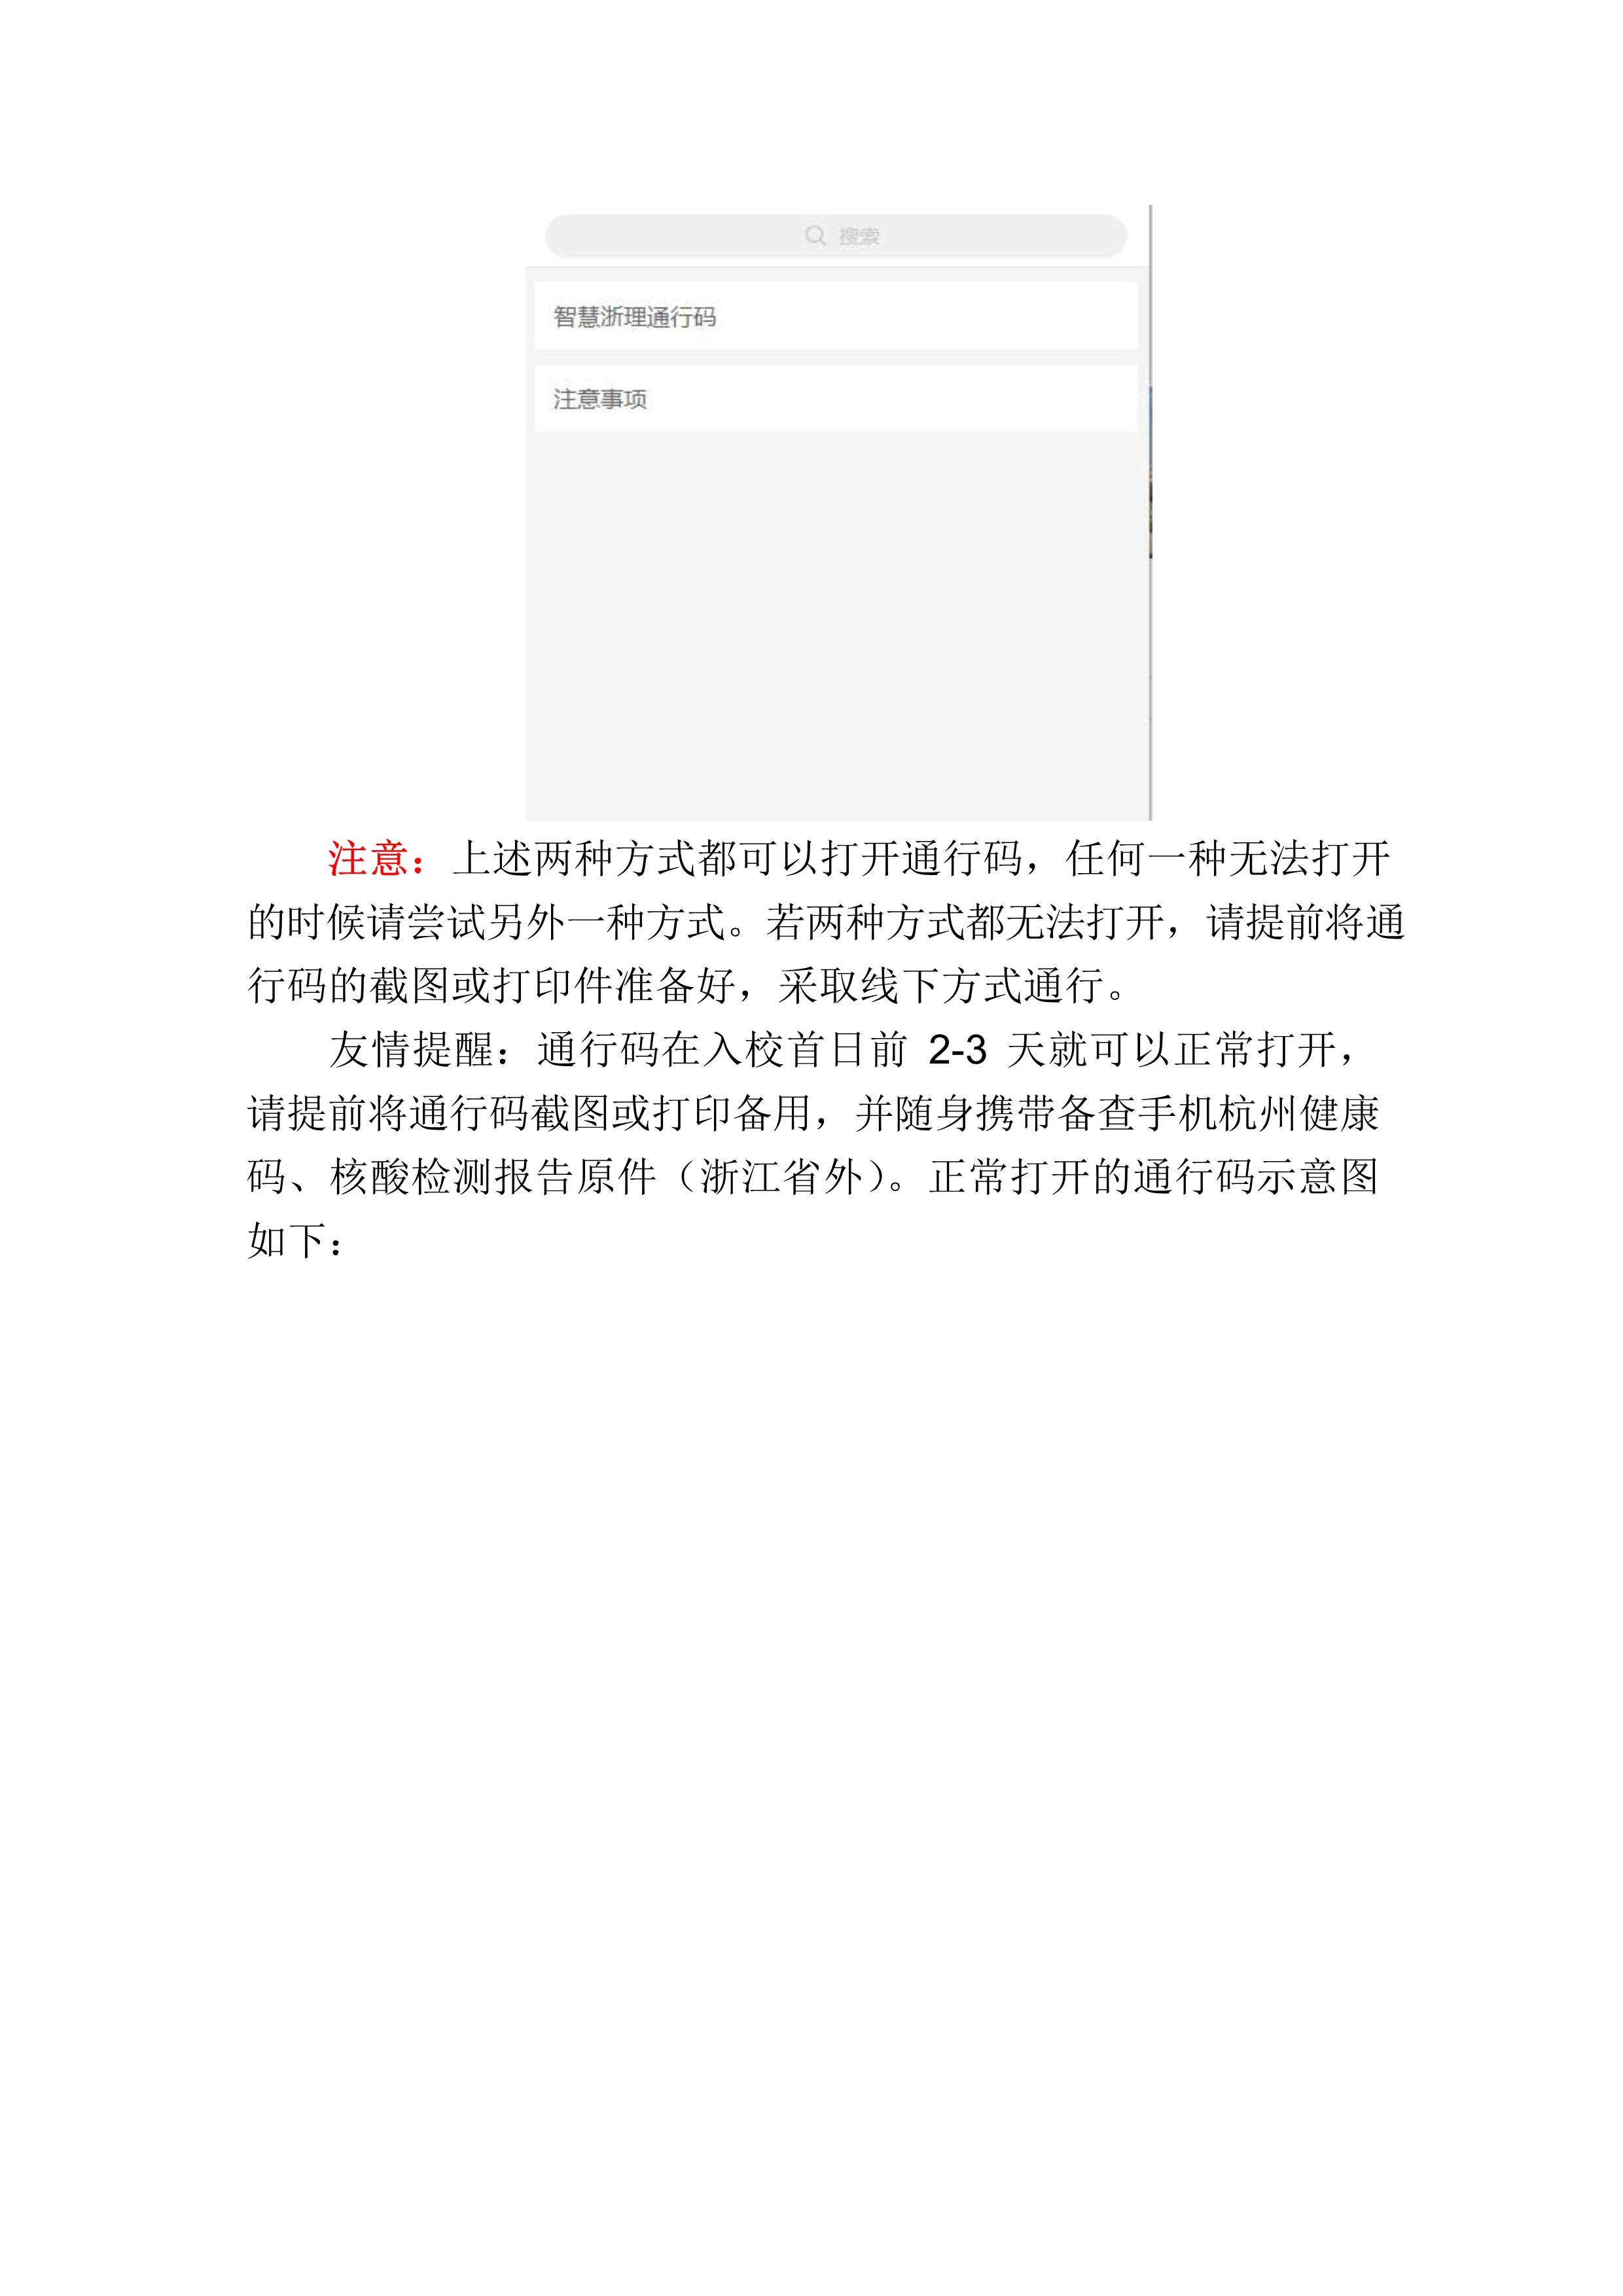 附件4：杭州考点考生防疫须知_7.jpg